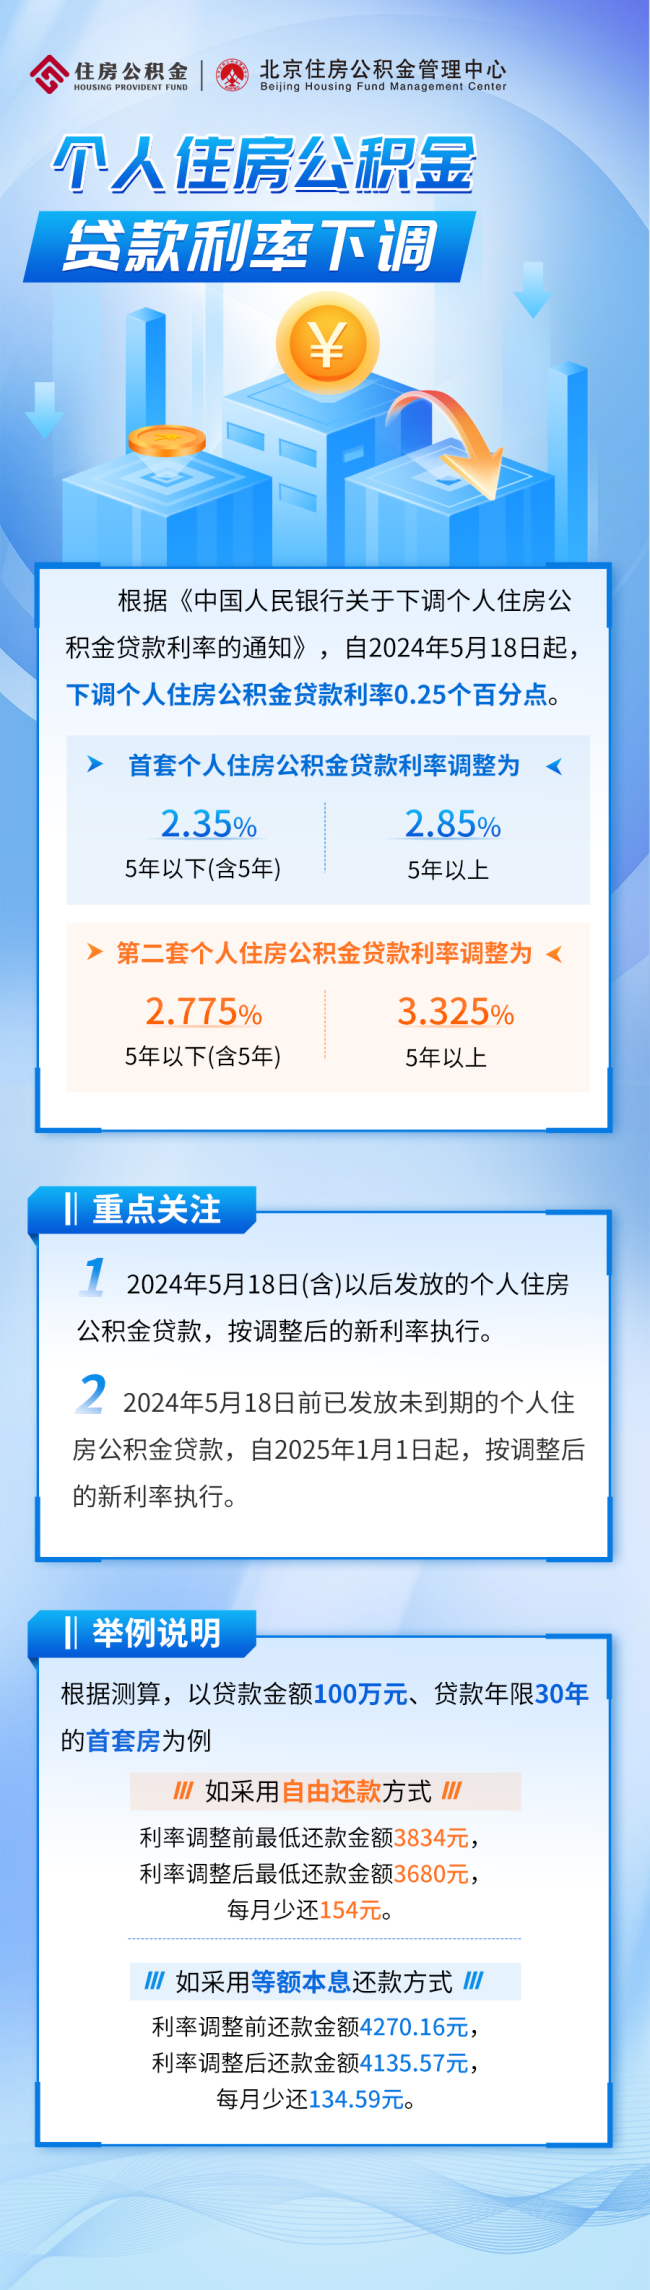 北京个人住房公积金贷款利率 下调0.25个百分点插图